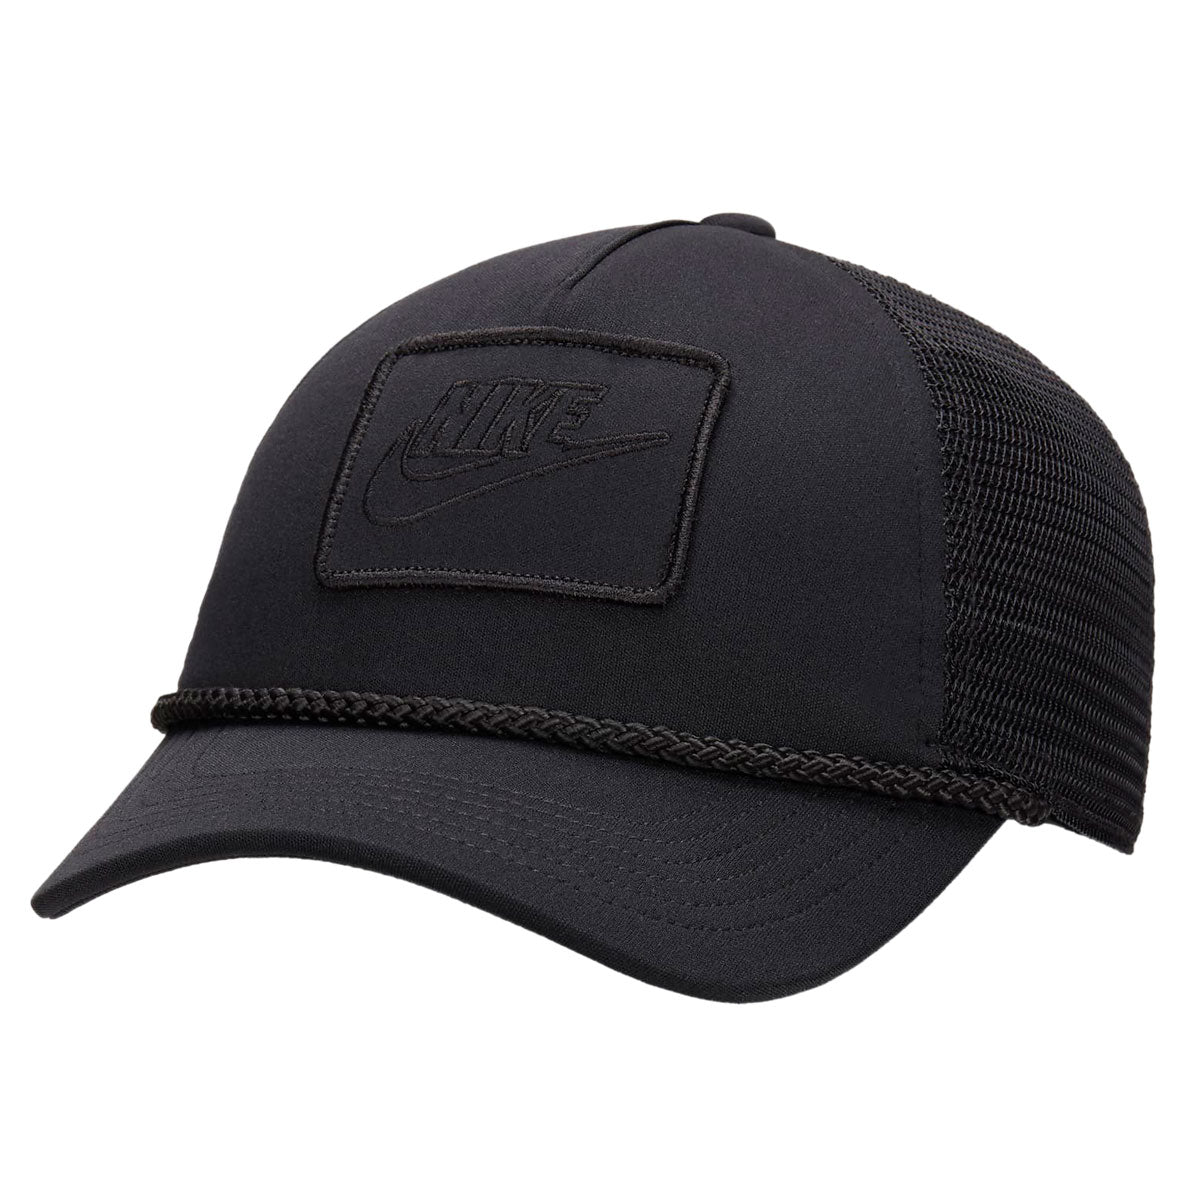 Nike Dri-FIT Rise Hat - Black/Black/Black image 1